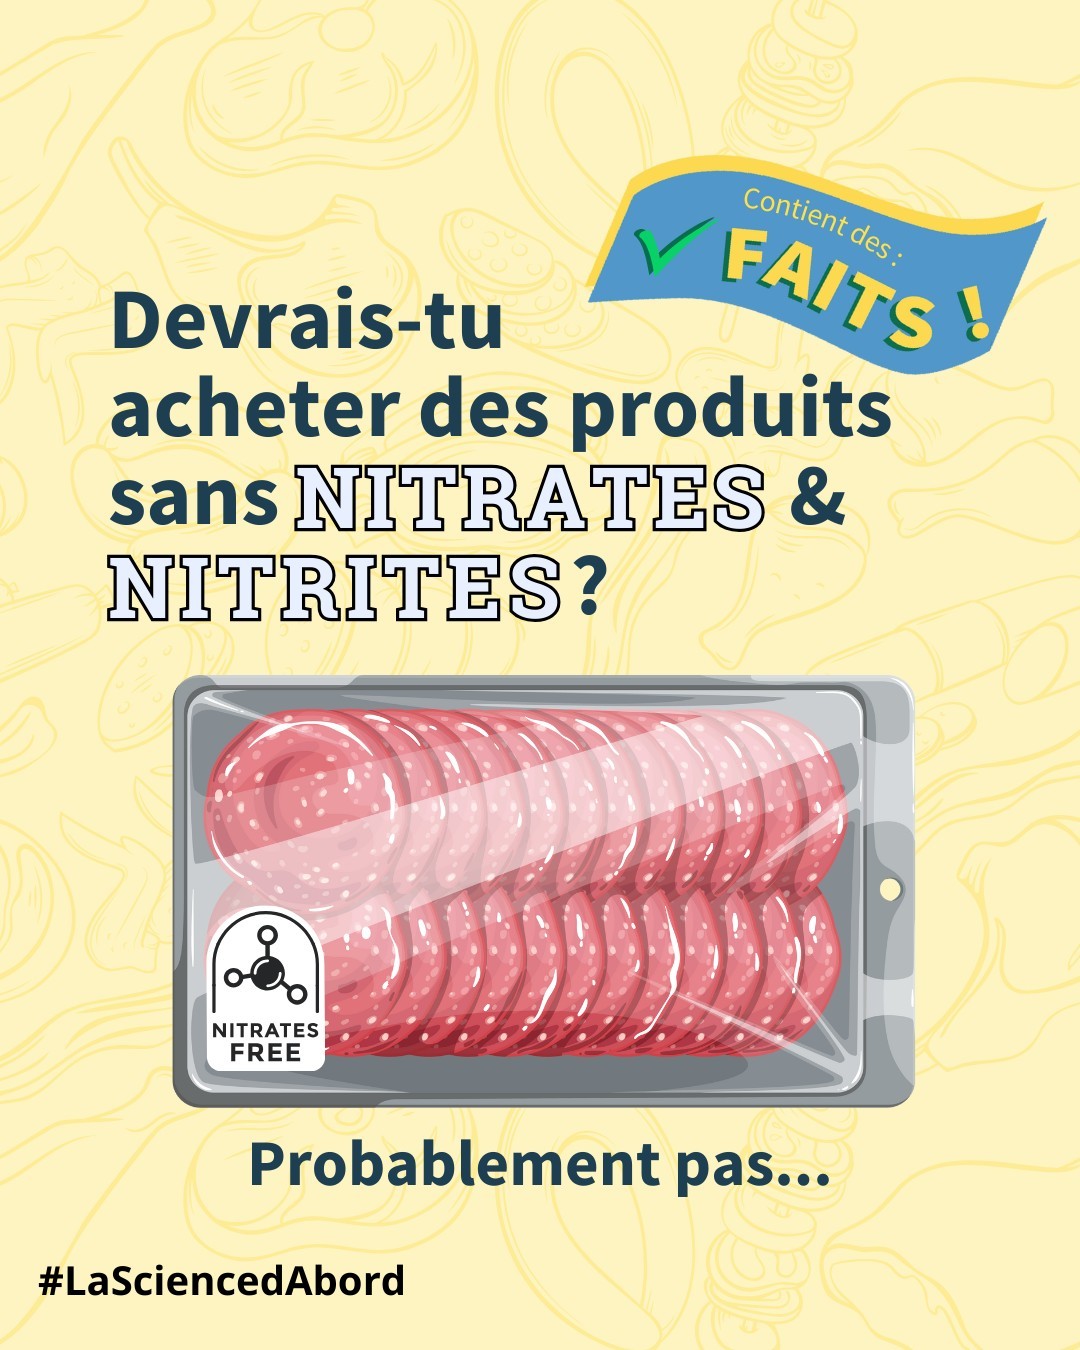 Devrais-tu acheter des produits sans nitrates/nitrites ?